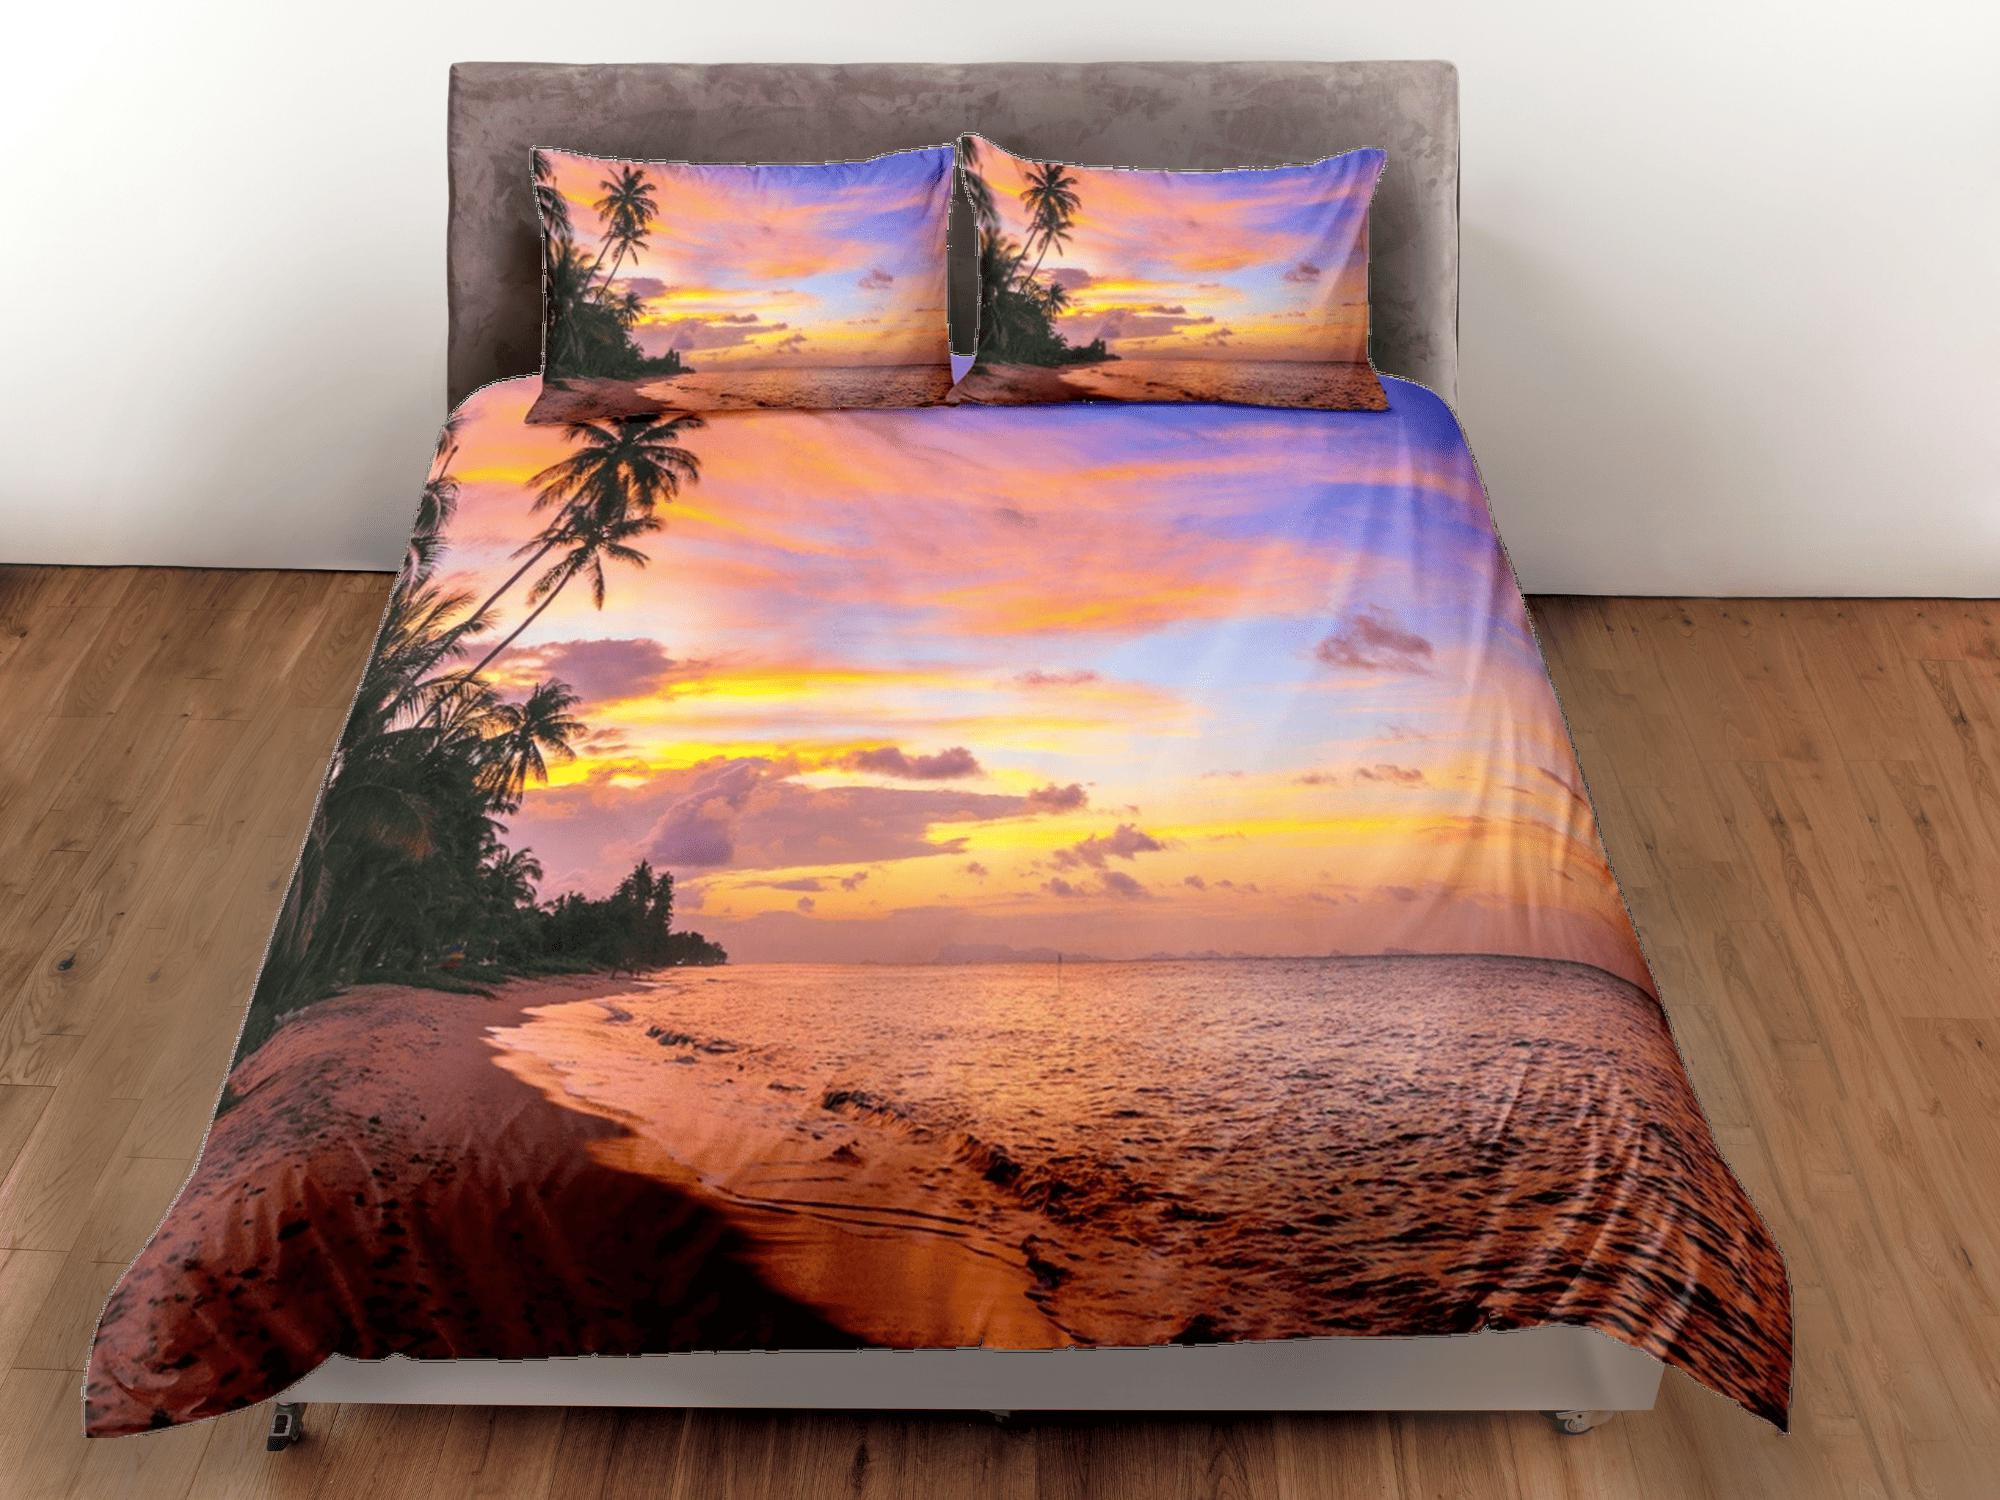 daintyduvet Sunset colors coastal grandma duvet cover nautical bedding set full queen king, aesthetic beach room decor, ocean lover gift seaman